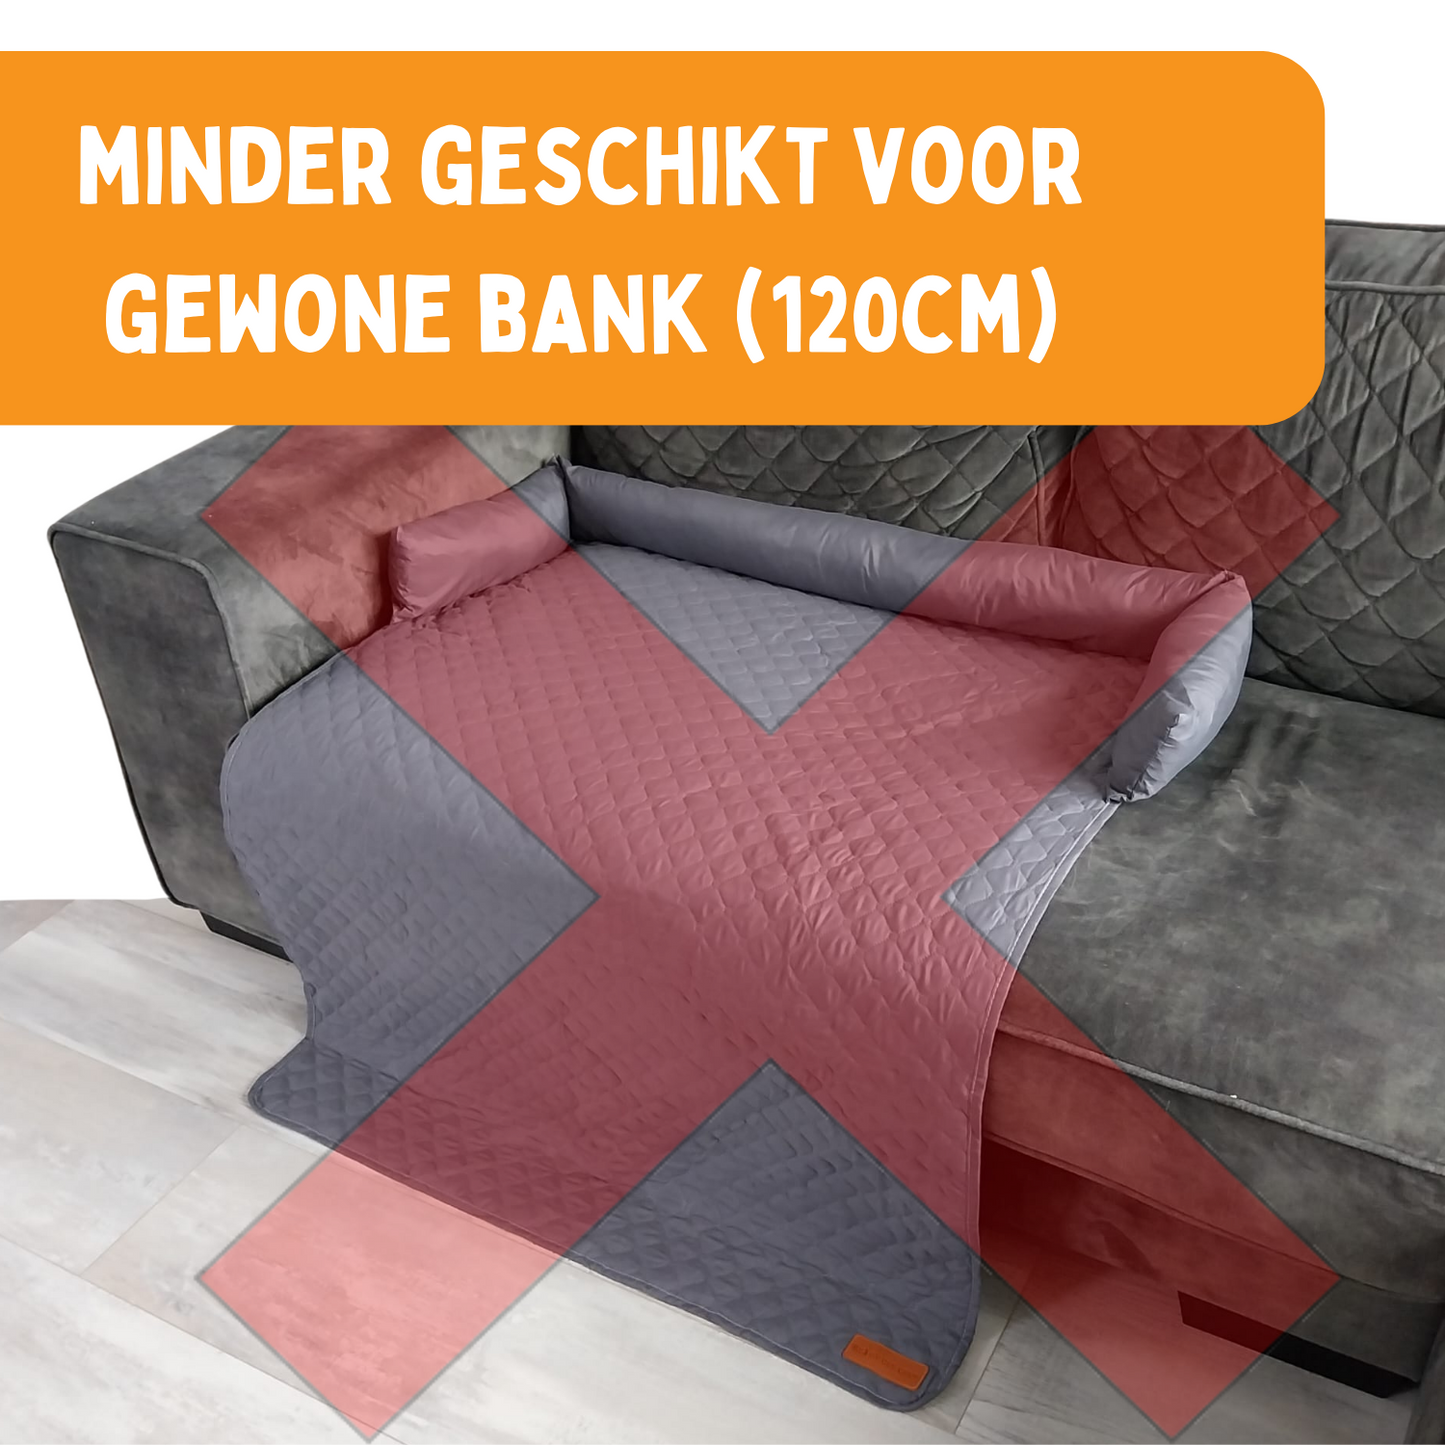 By Cee Cee - Origineel Hondendeken Bank – Hondenkleed Bank - Waterproof - Coole Zomer Editie - Hondenmand - Premium – Donkergrijs - Maat XL